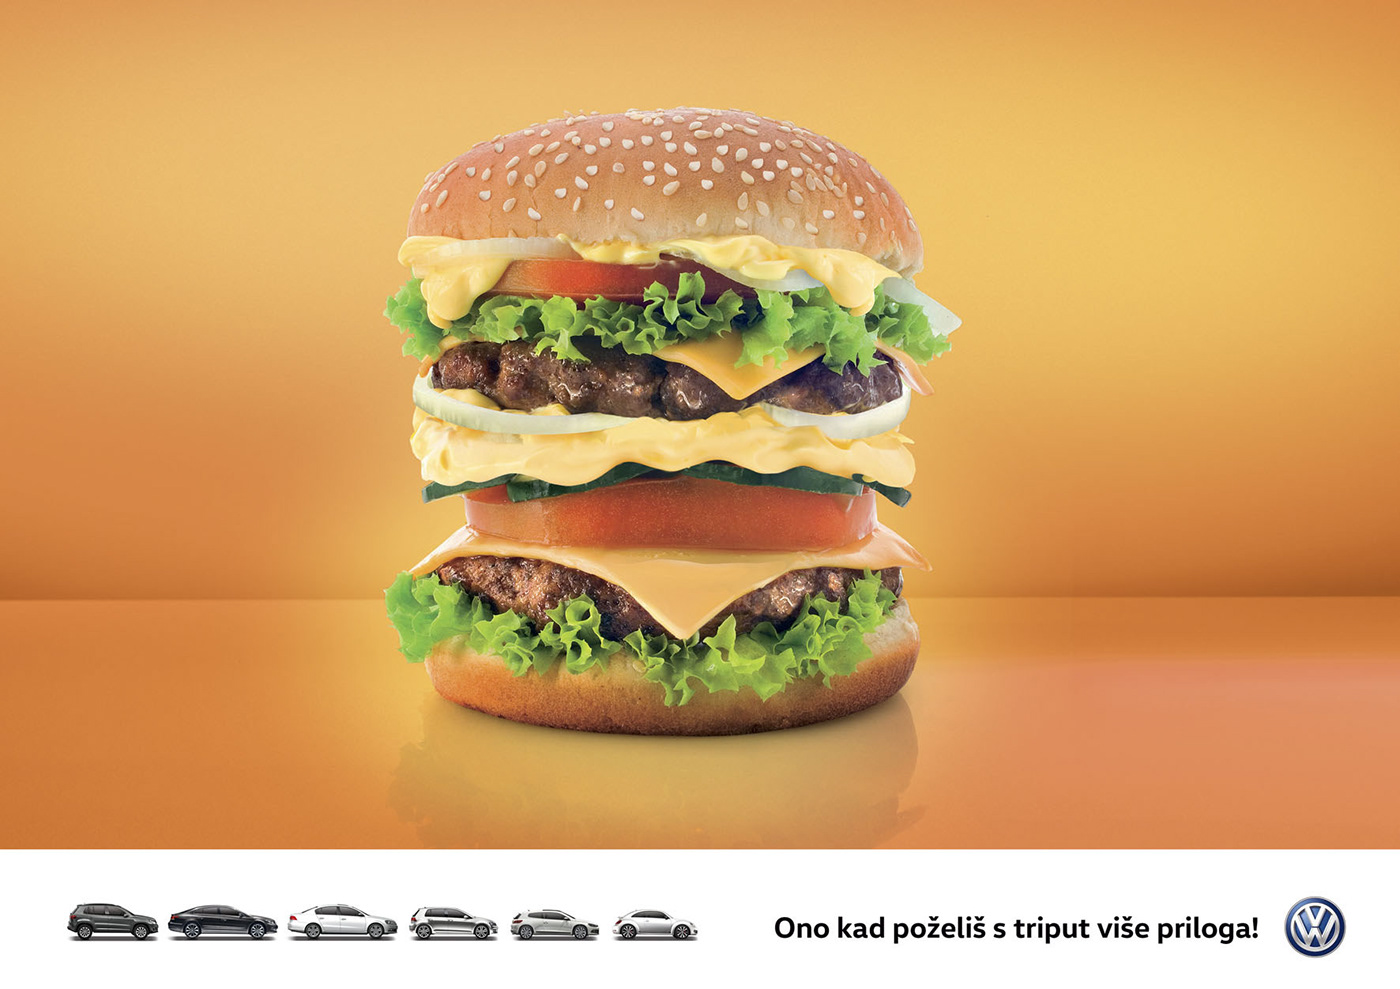 Image may contain: fast food, food and hamburger